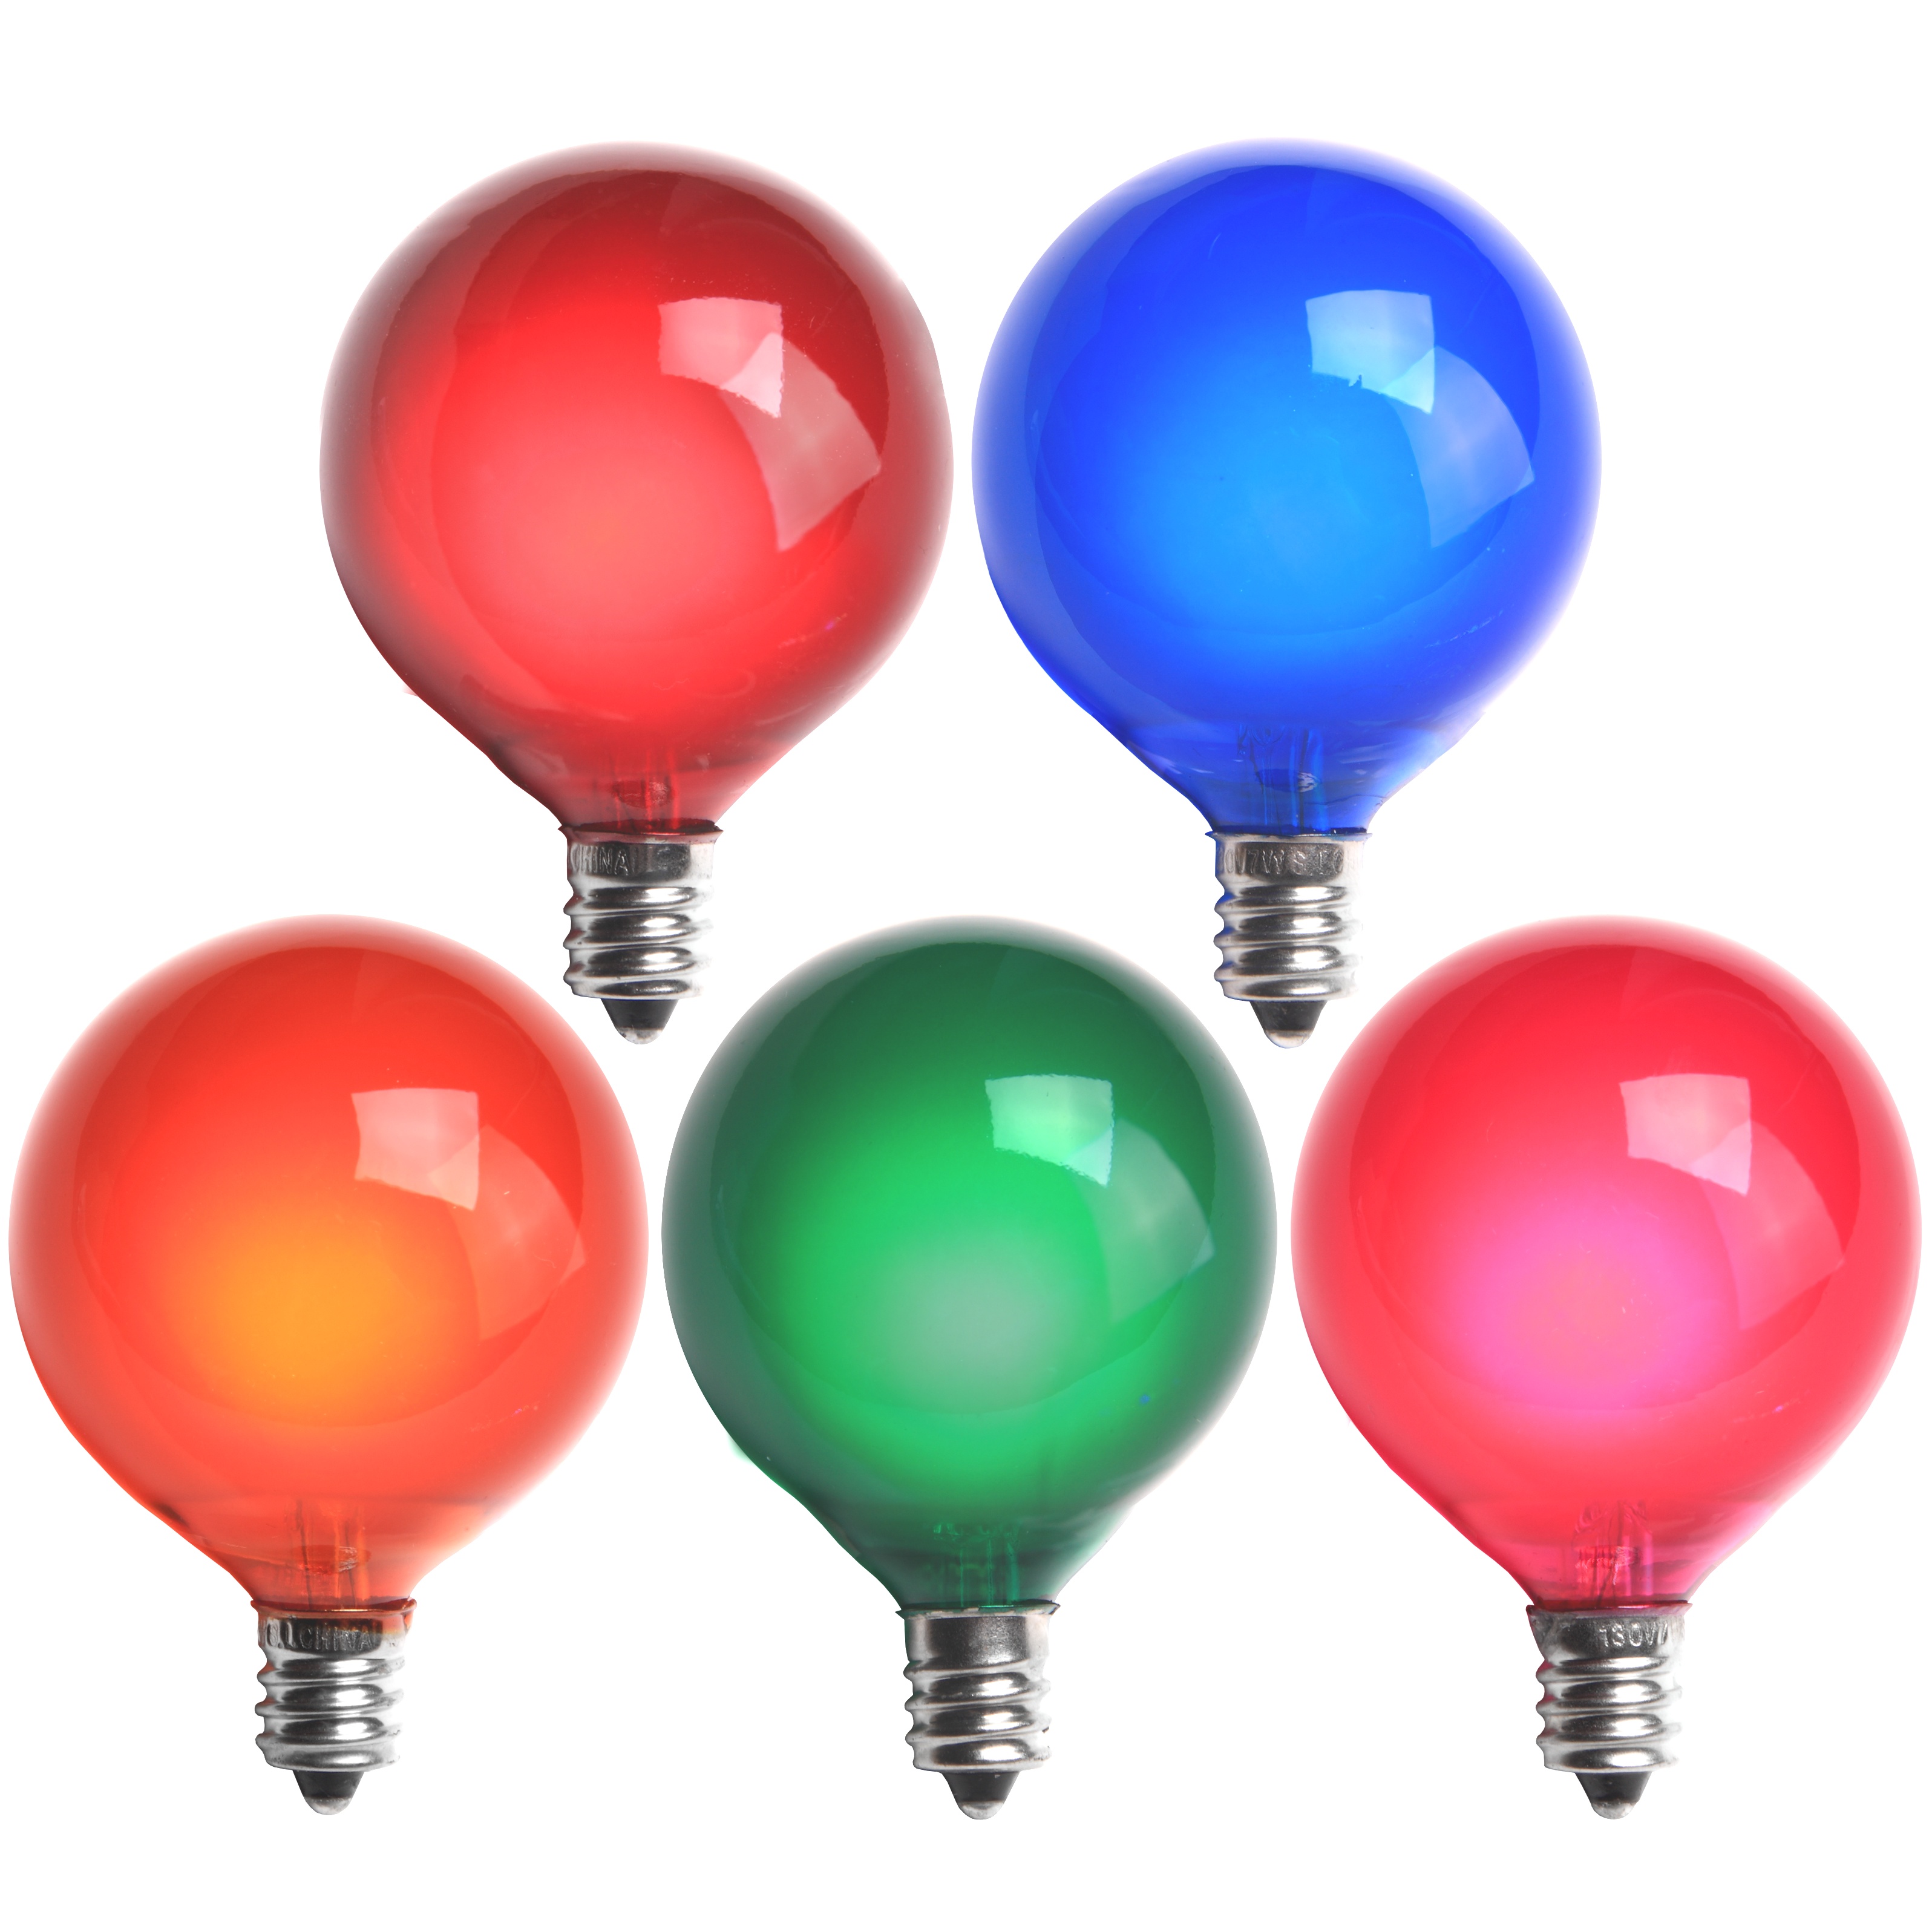 Christmas Light Replacement Bulbs | C9 Color Change Red LED Christmas Light Bulbs | Christmas Light Replacement Bulbs